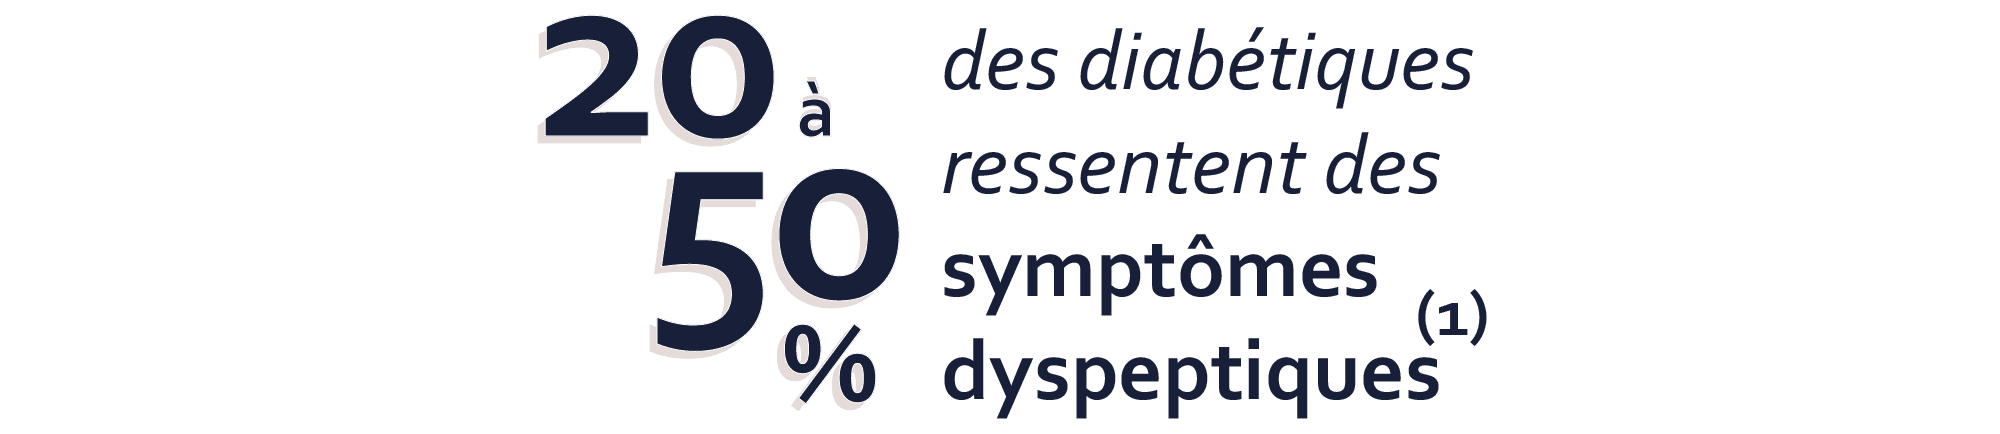 20 à 50% des diabétiques ressentent des symptômes dyspeptiques